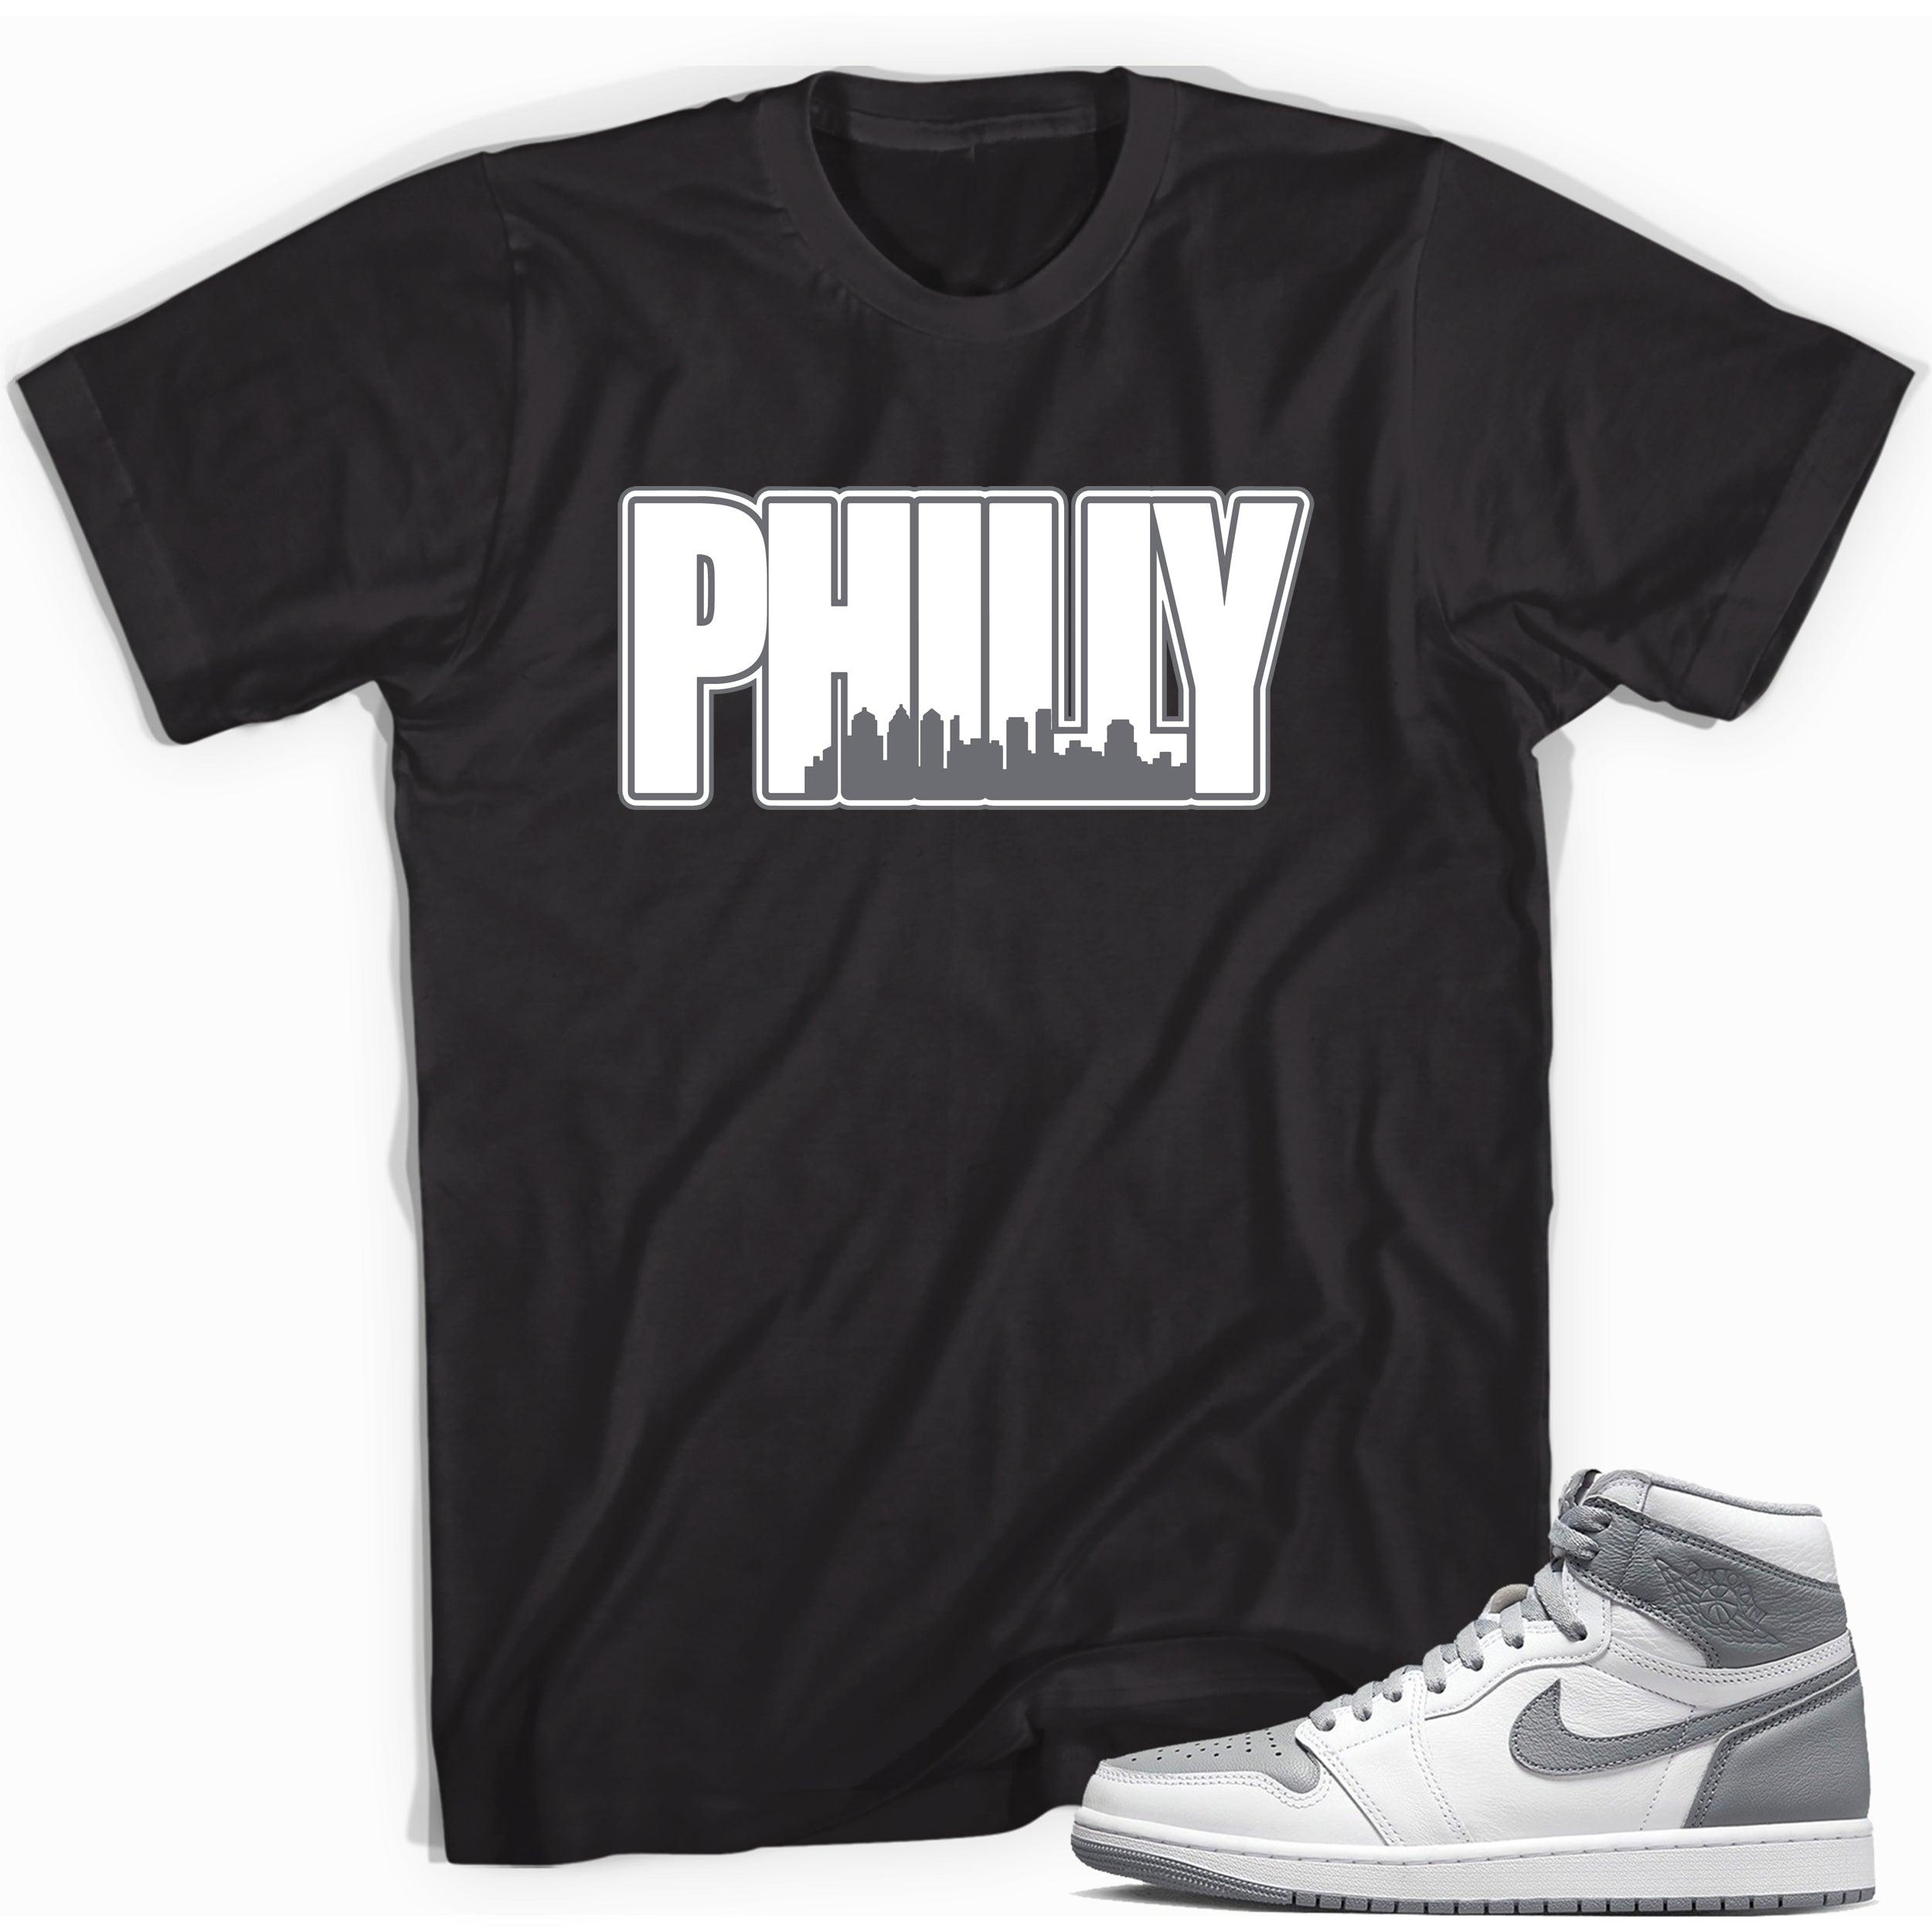 Philly Sneaker Tee for Jordan 1s photo